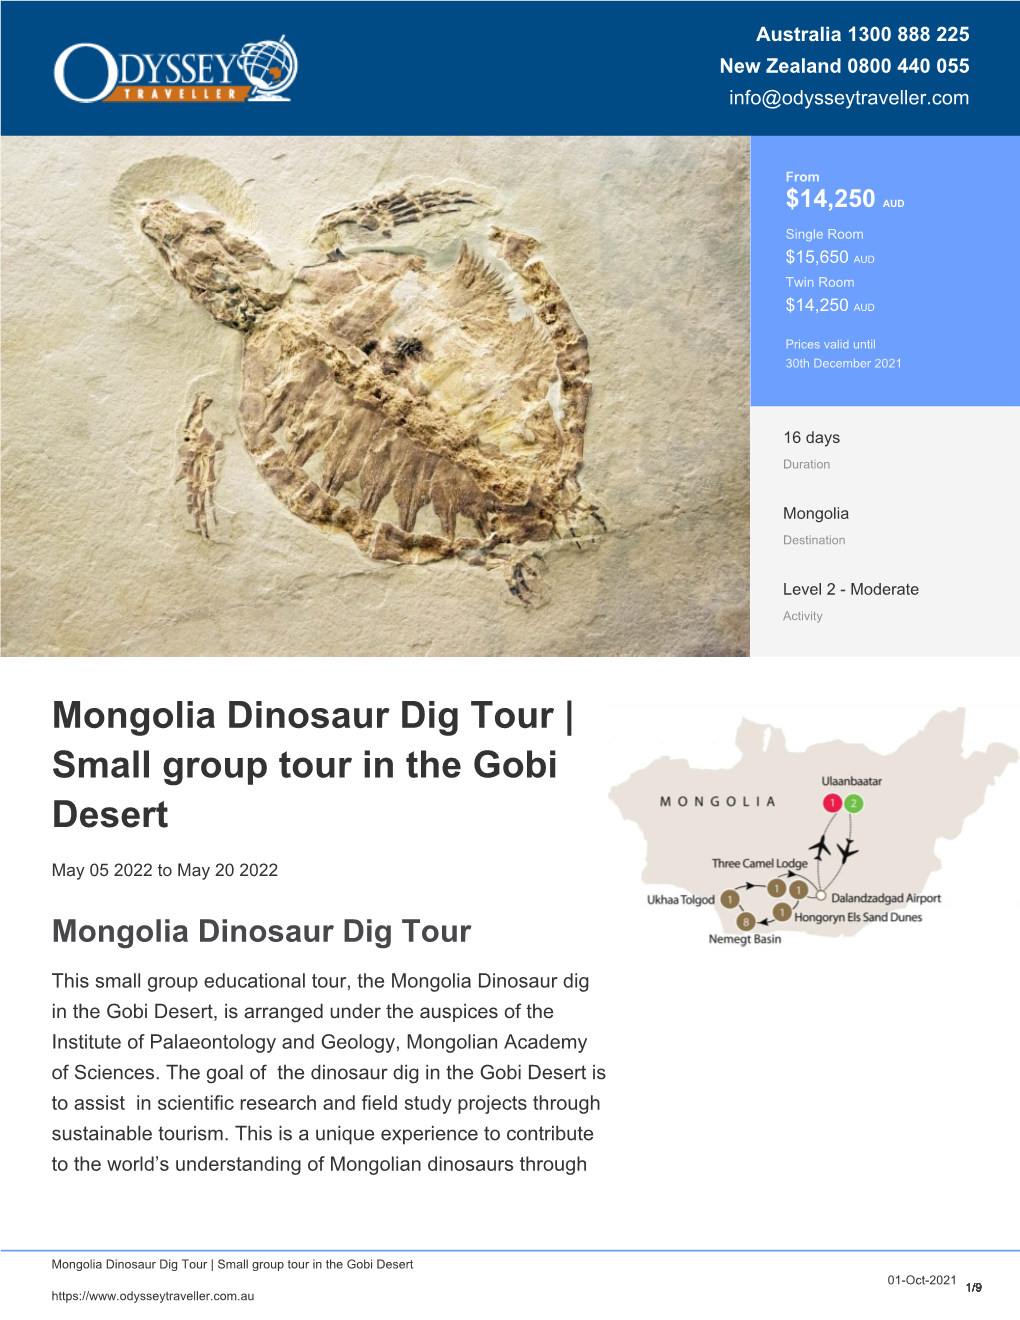 Gobi Desert Dinosaur Dig Small Group Tour (2020)